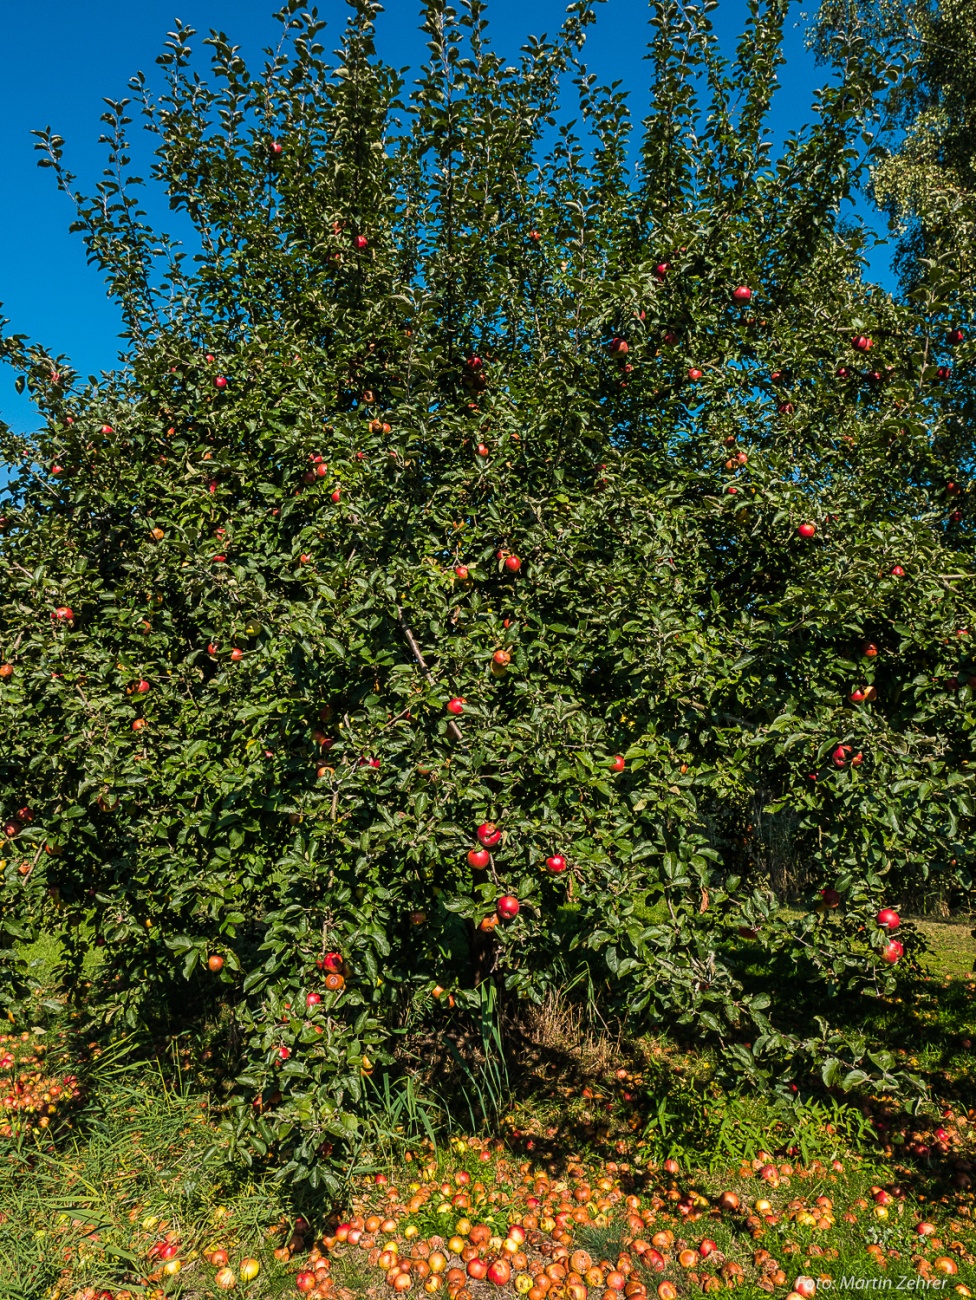 Foto: Martin Zehrer - Apfelbaum... Ich kann nicht anders, ich muss mir einen ausleihen! ;-) 